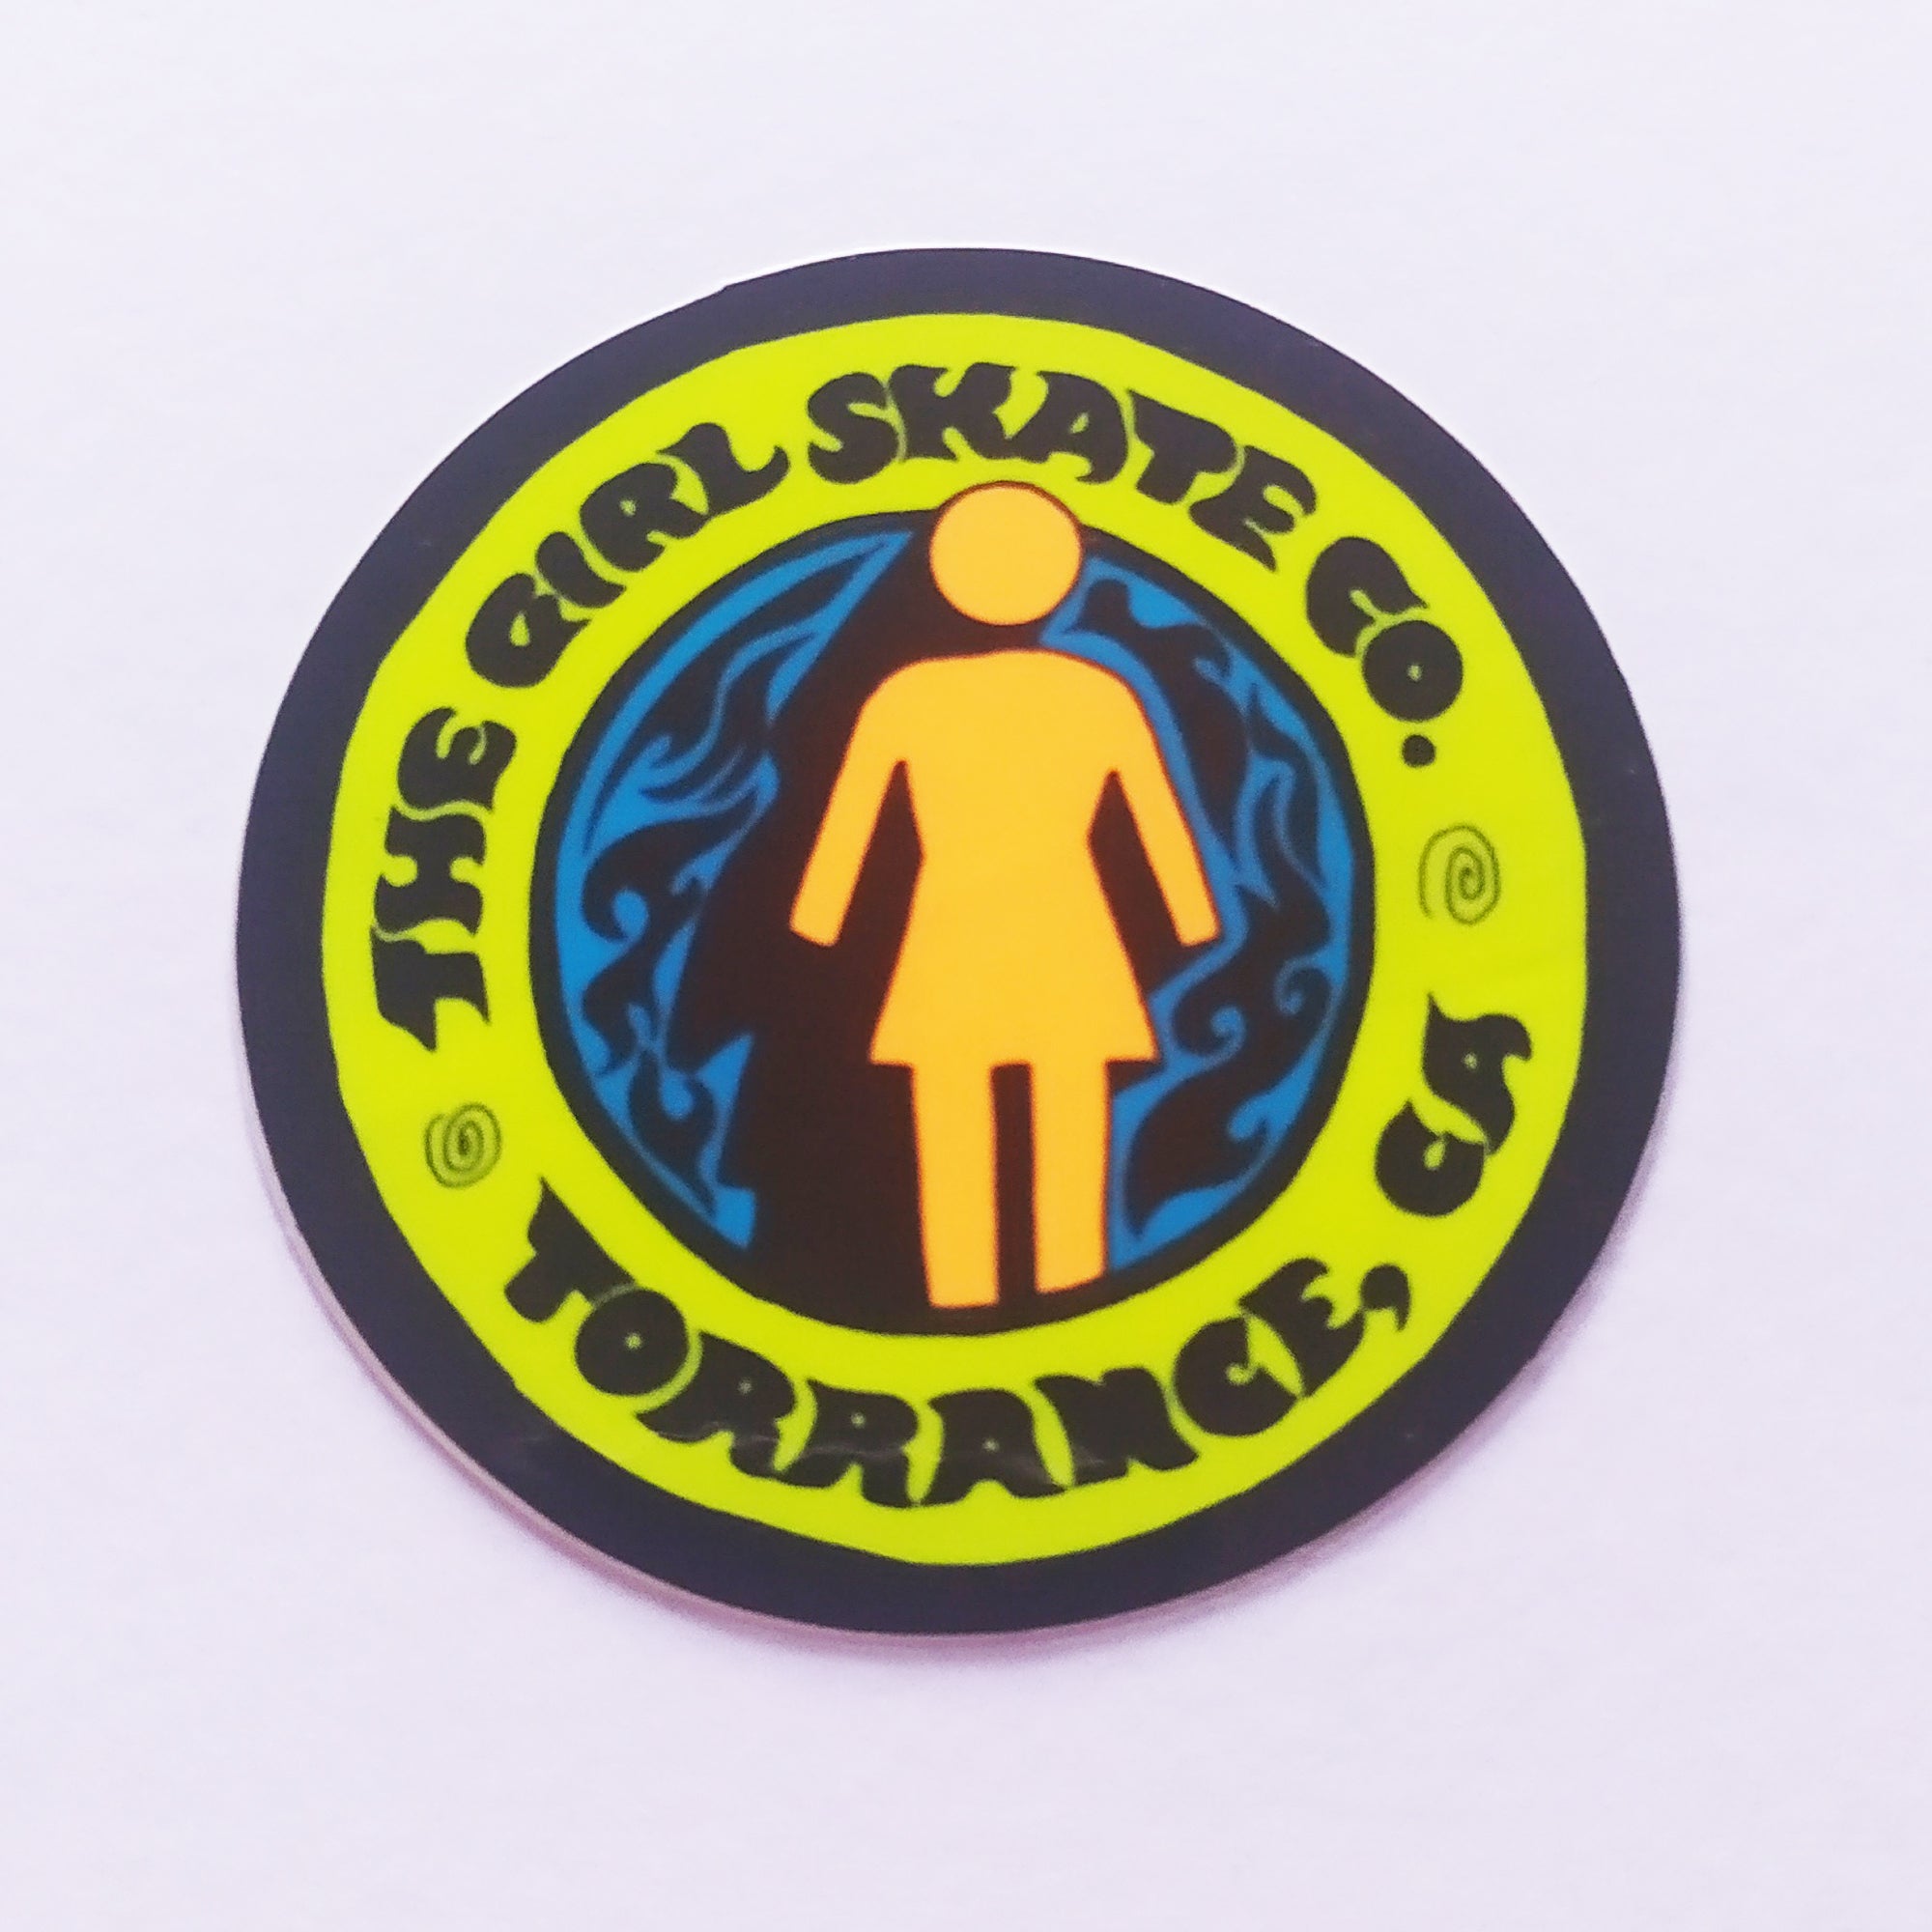 Girl Skateboard Sticker - 6cm across approx